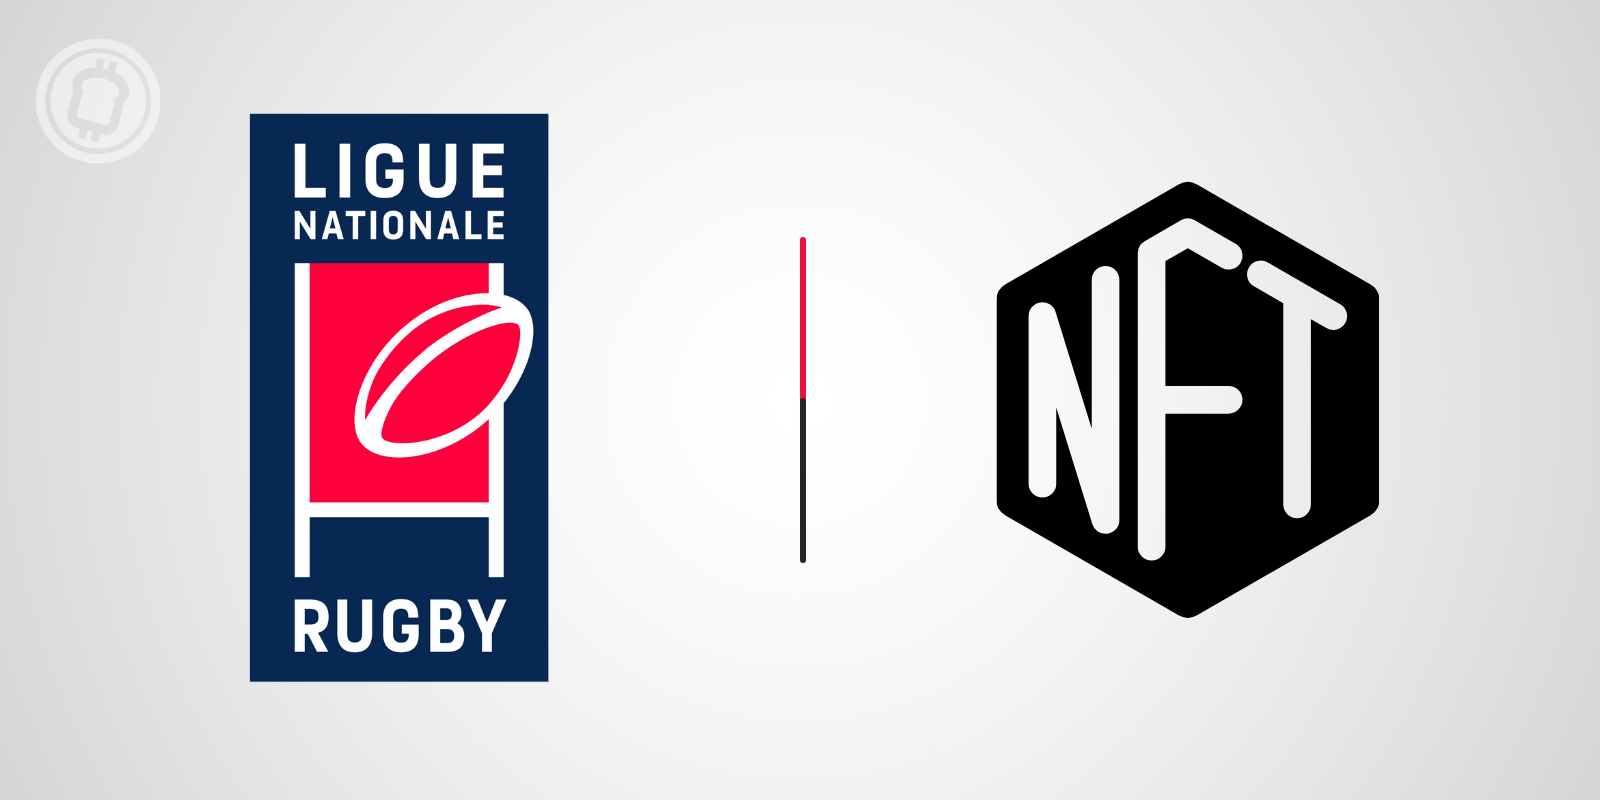 La Ligue nationale de rugby (LNR) se lance dans les tokens non fongibles (NFTs)